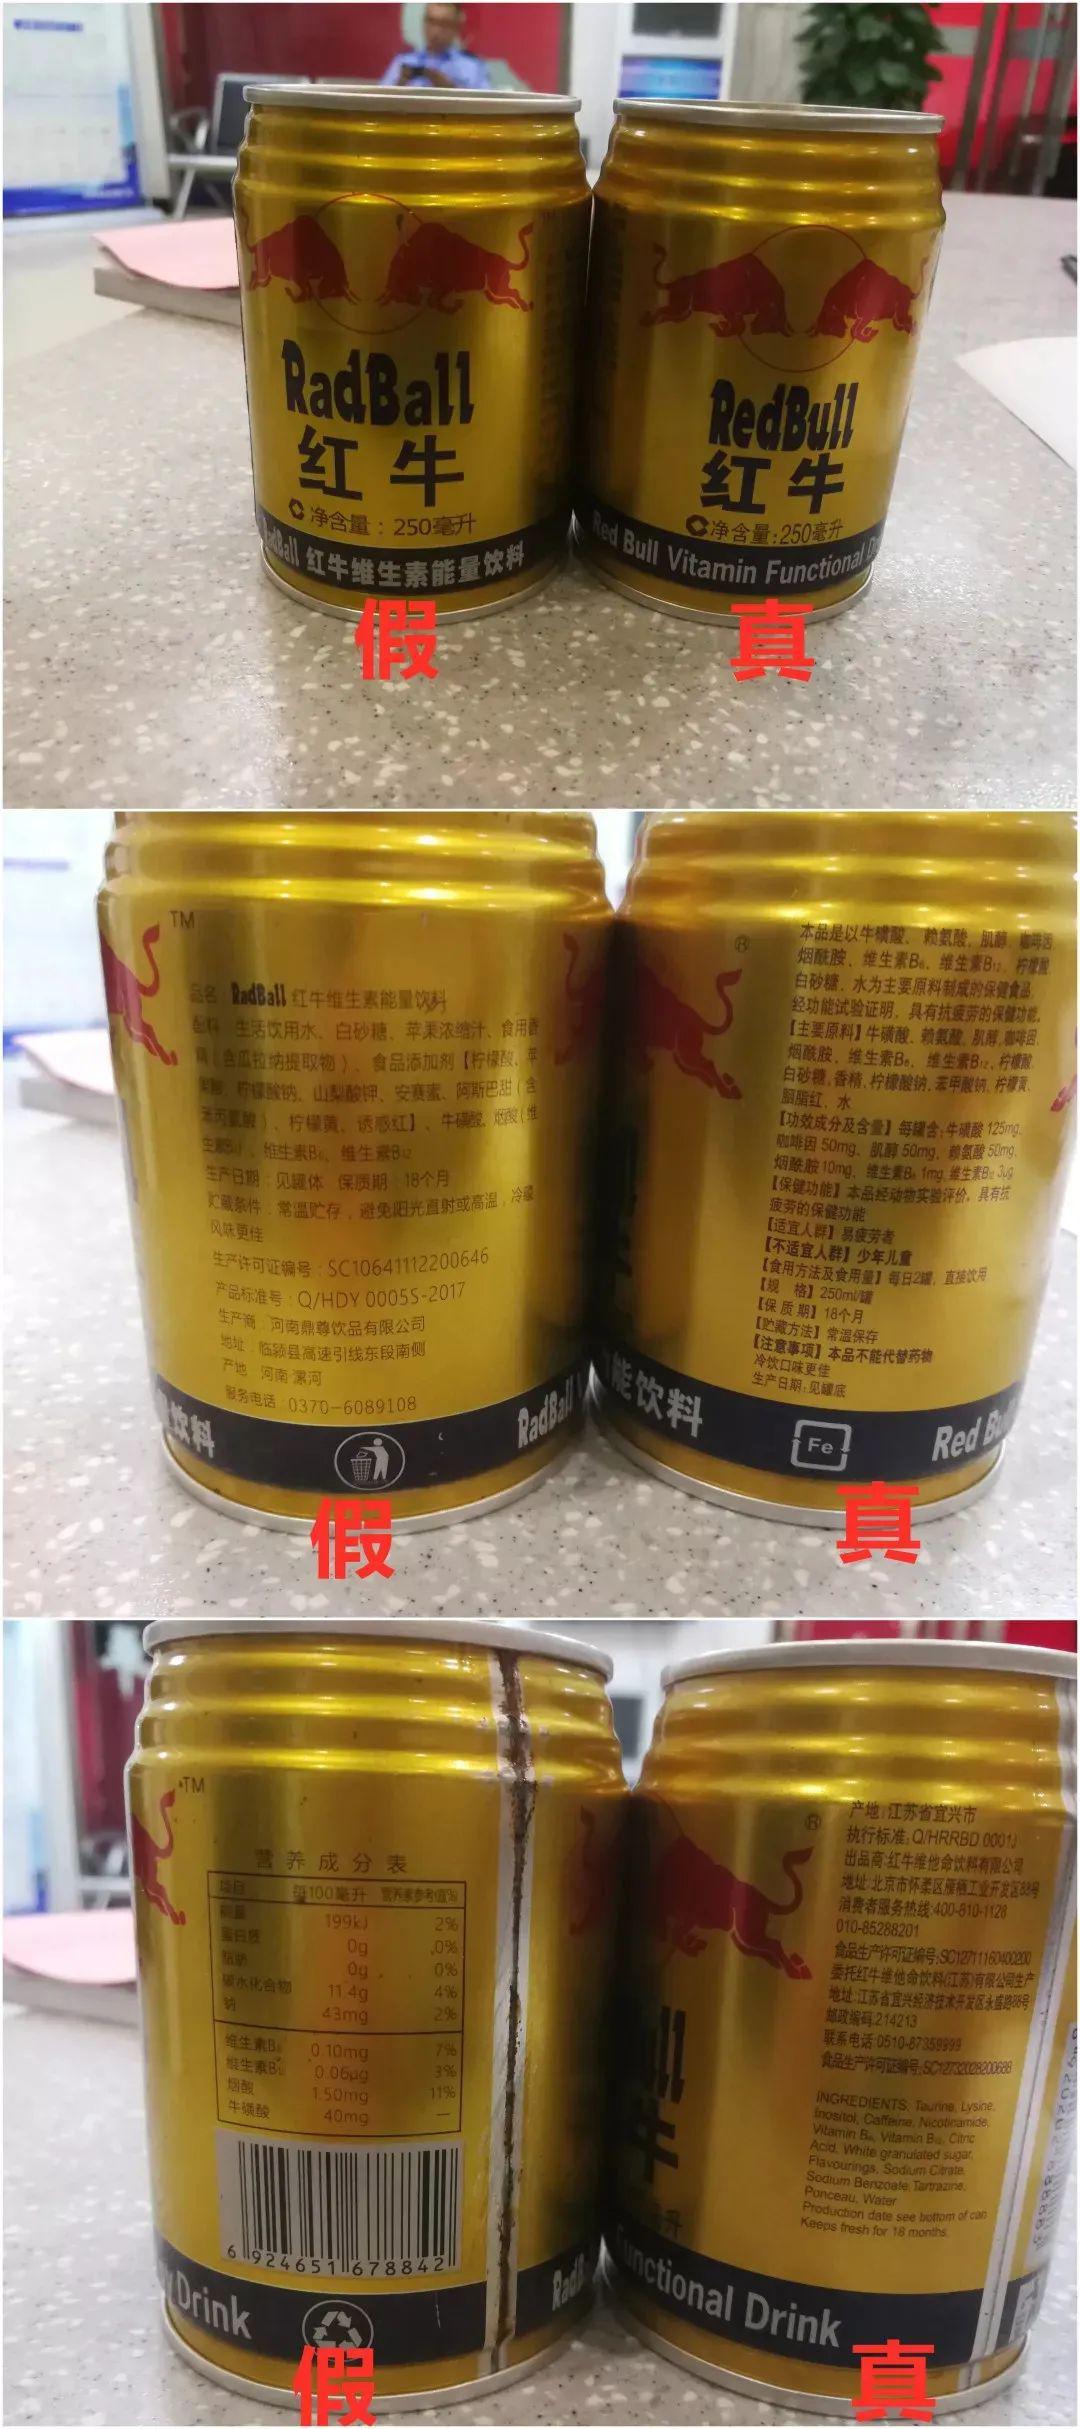 28800瓶山寨红牛在台州被查真假辨别细节公布